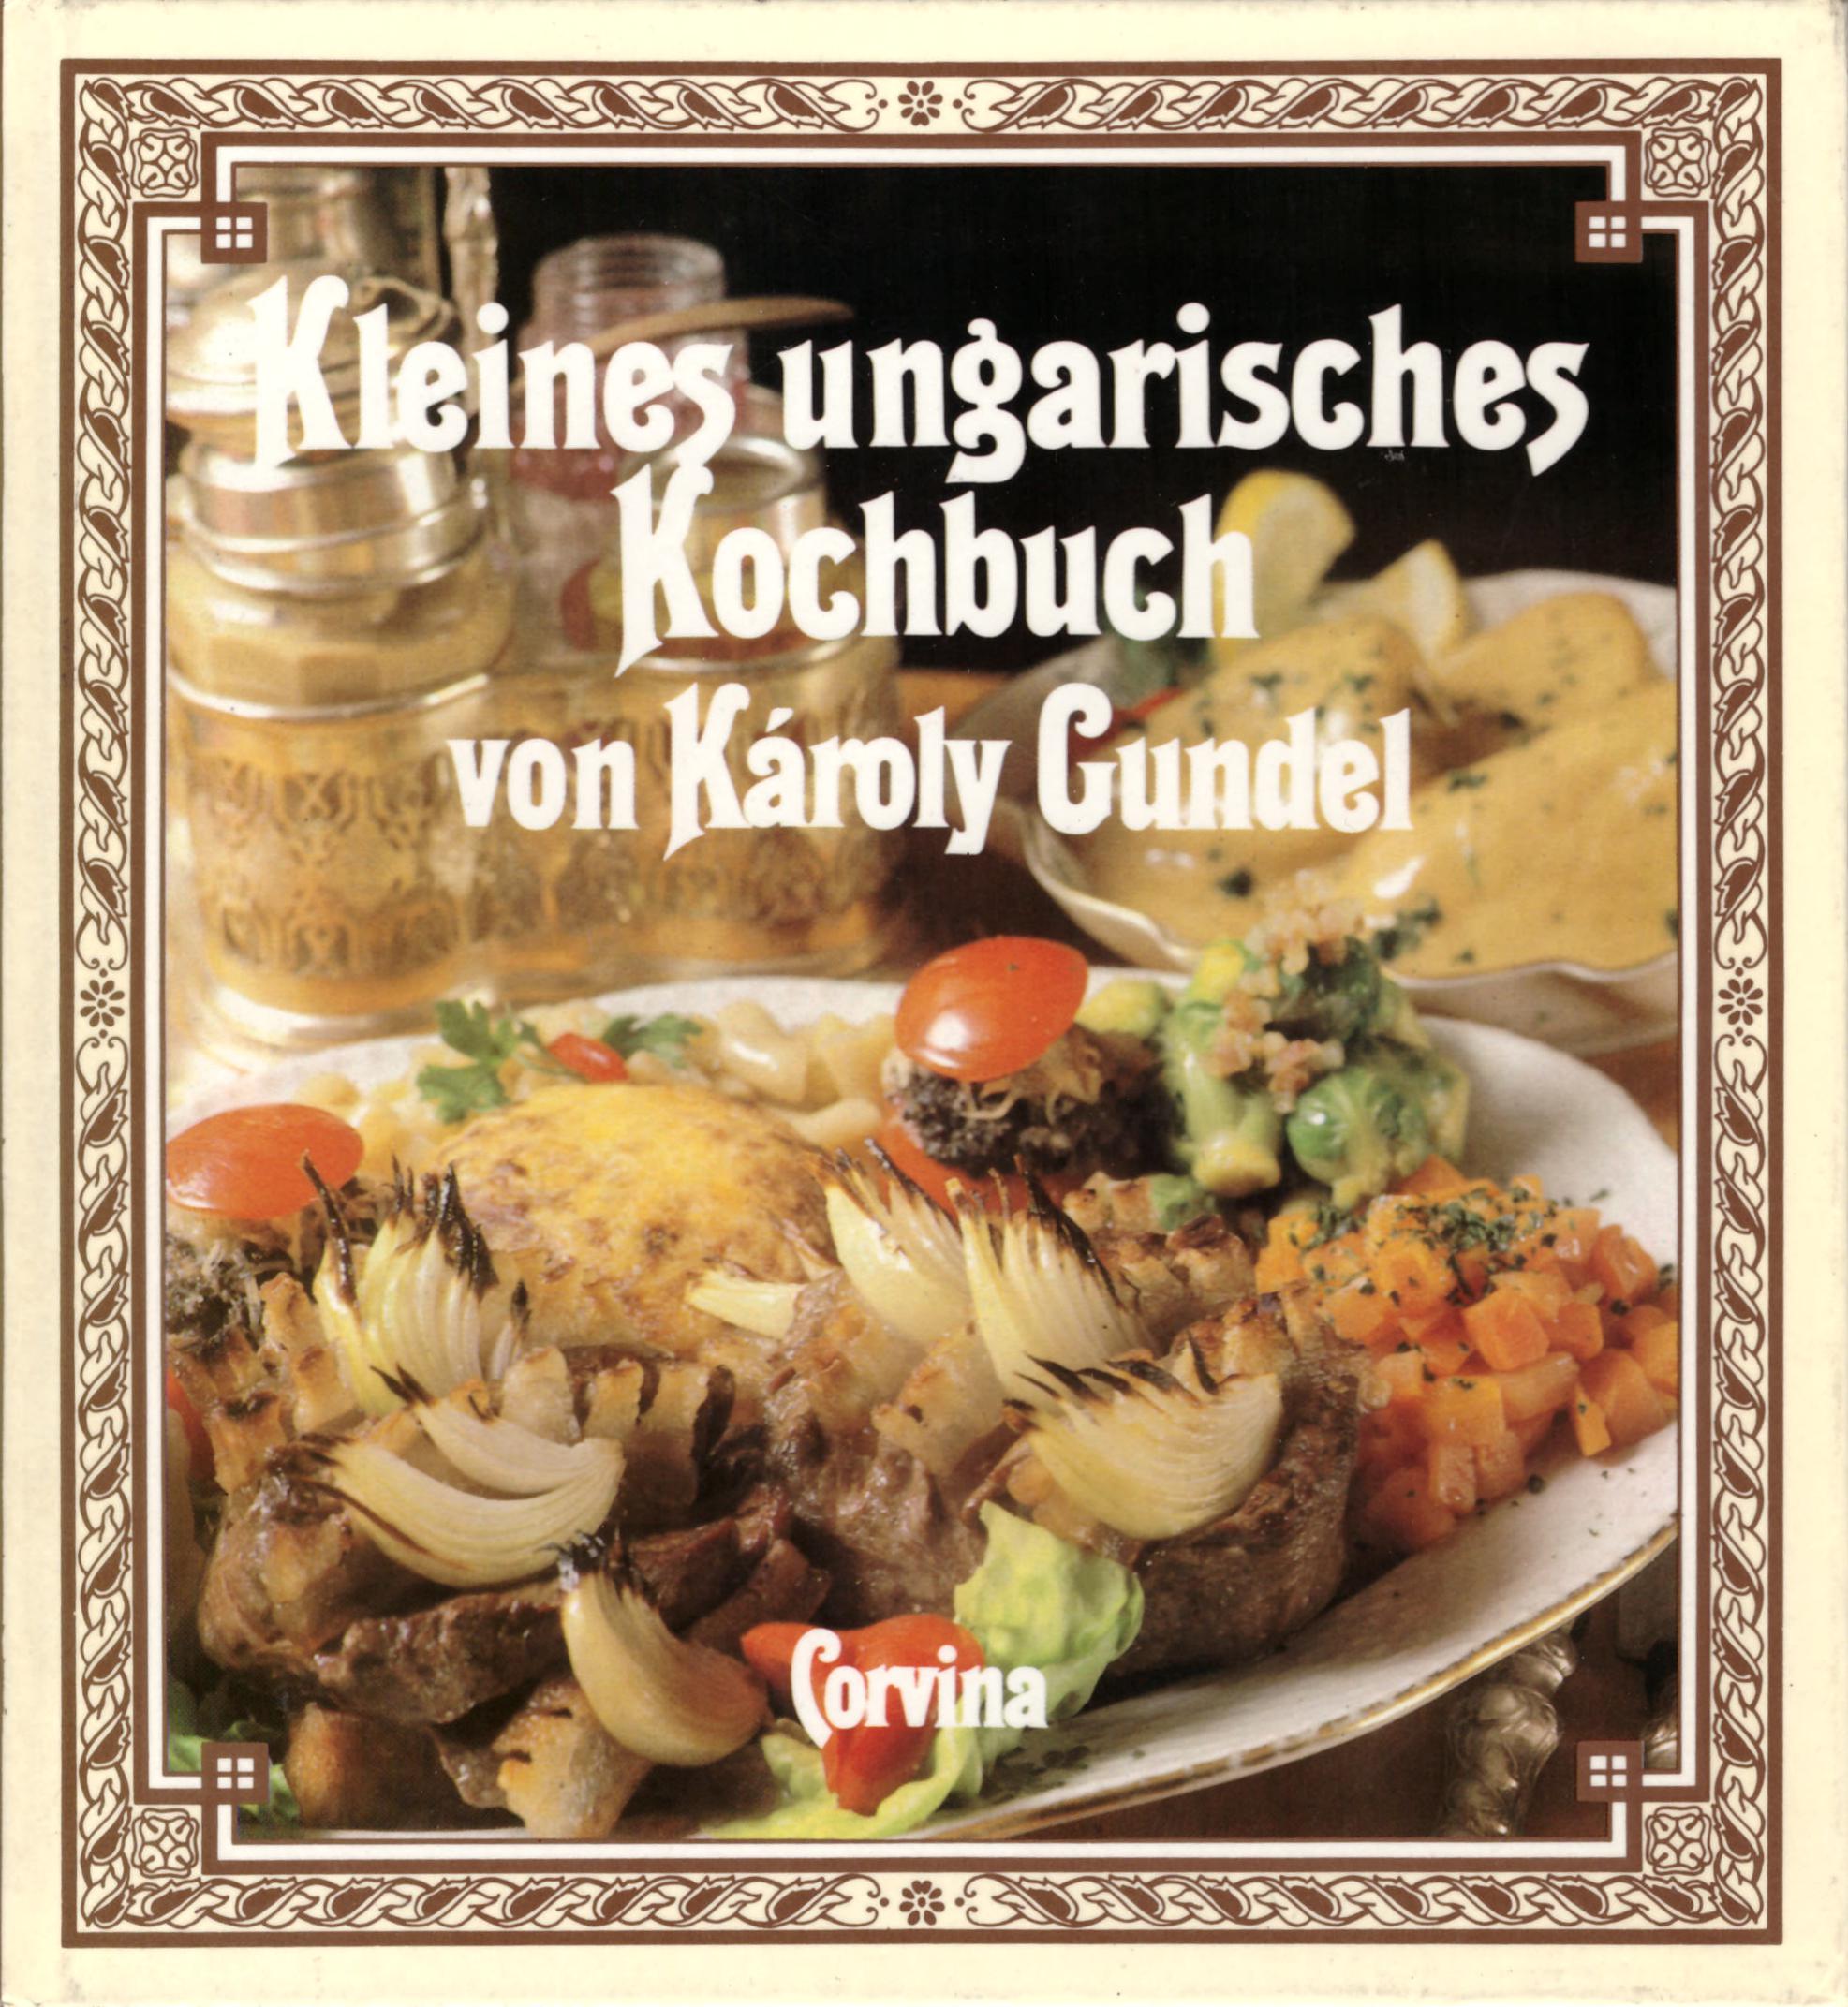 Kleines ungarisches Kochbuch von Károly Gundel